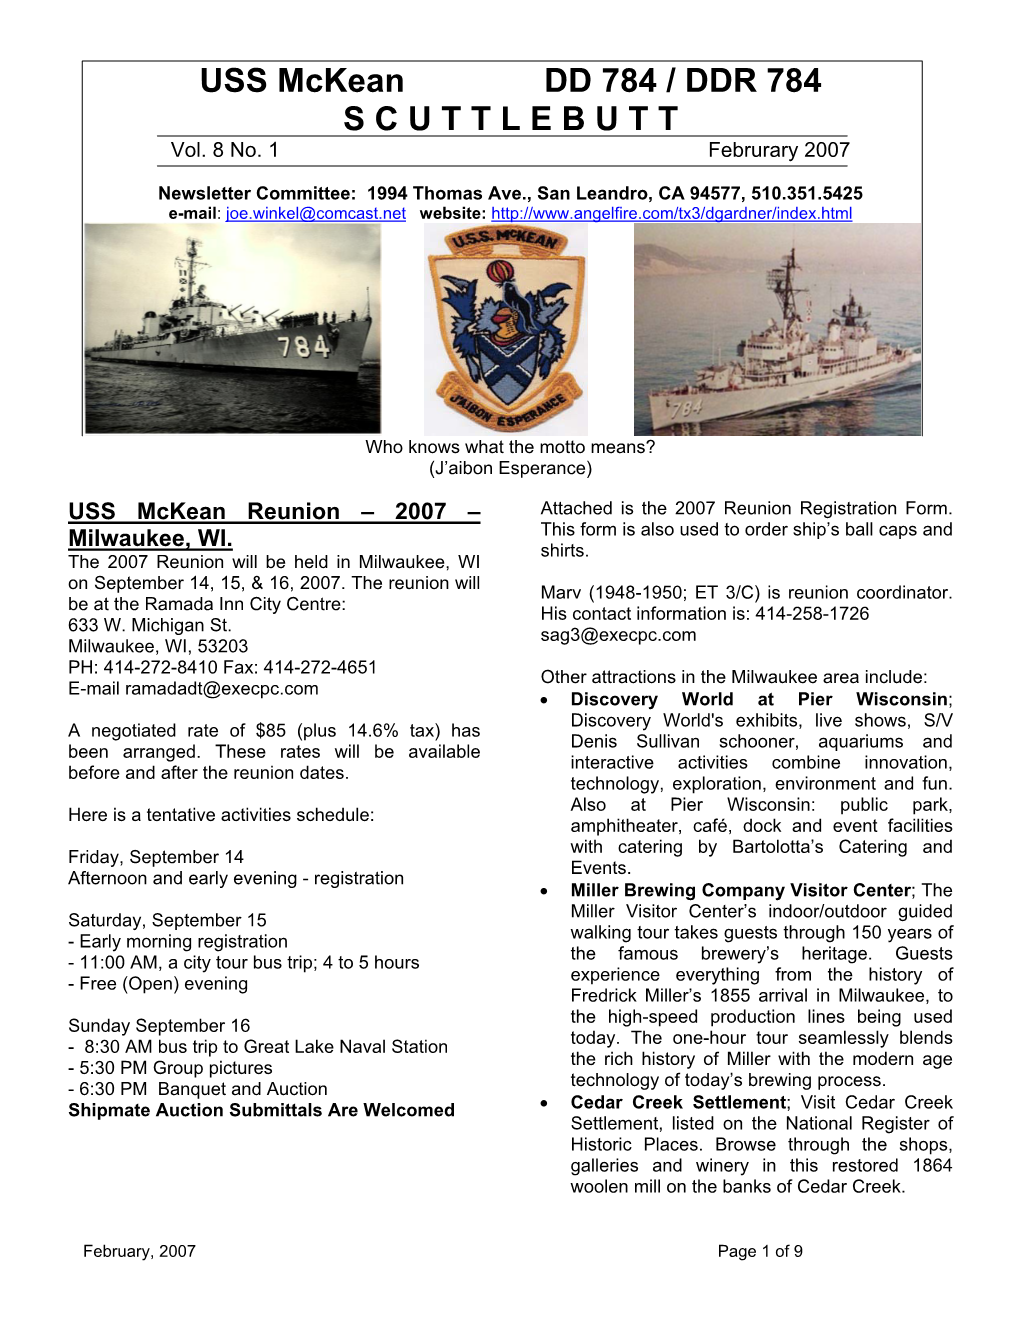 USS Mckean DD 784 / DDR 784 S C U T T L E B U T T Vol